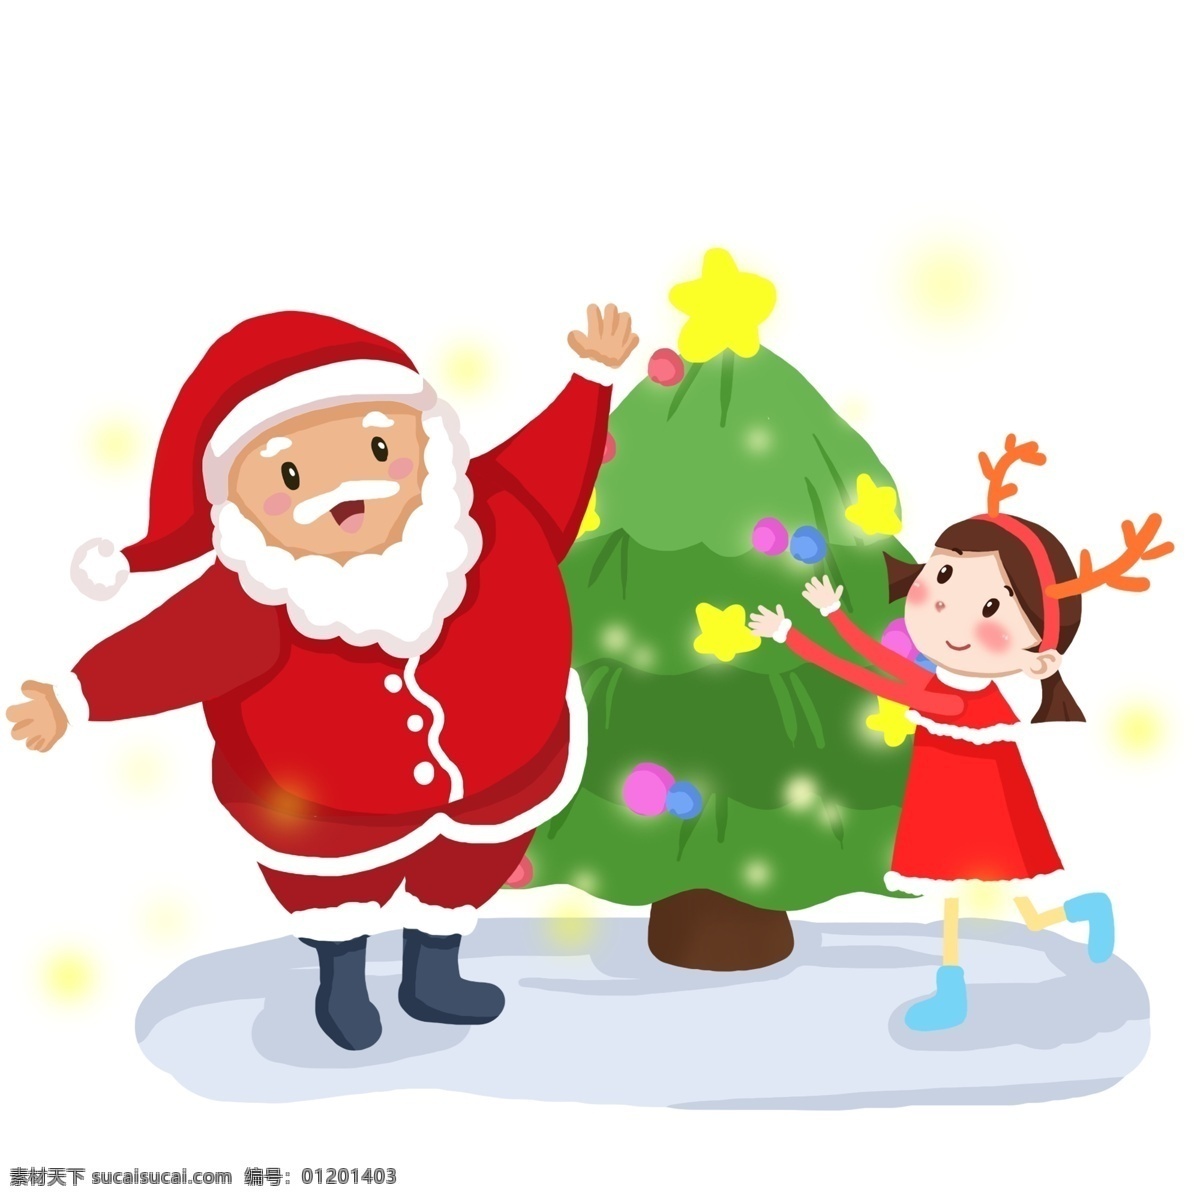 卡通 手绘 圣诞节 圣诞老人 手绘圣诞节日 圣诞节日气氛 小女孩 送礼 物 可爱小姑娘 圣诞树 松树